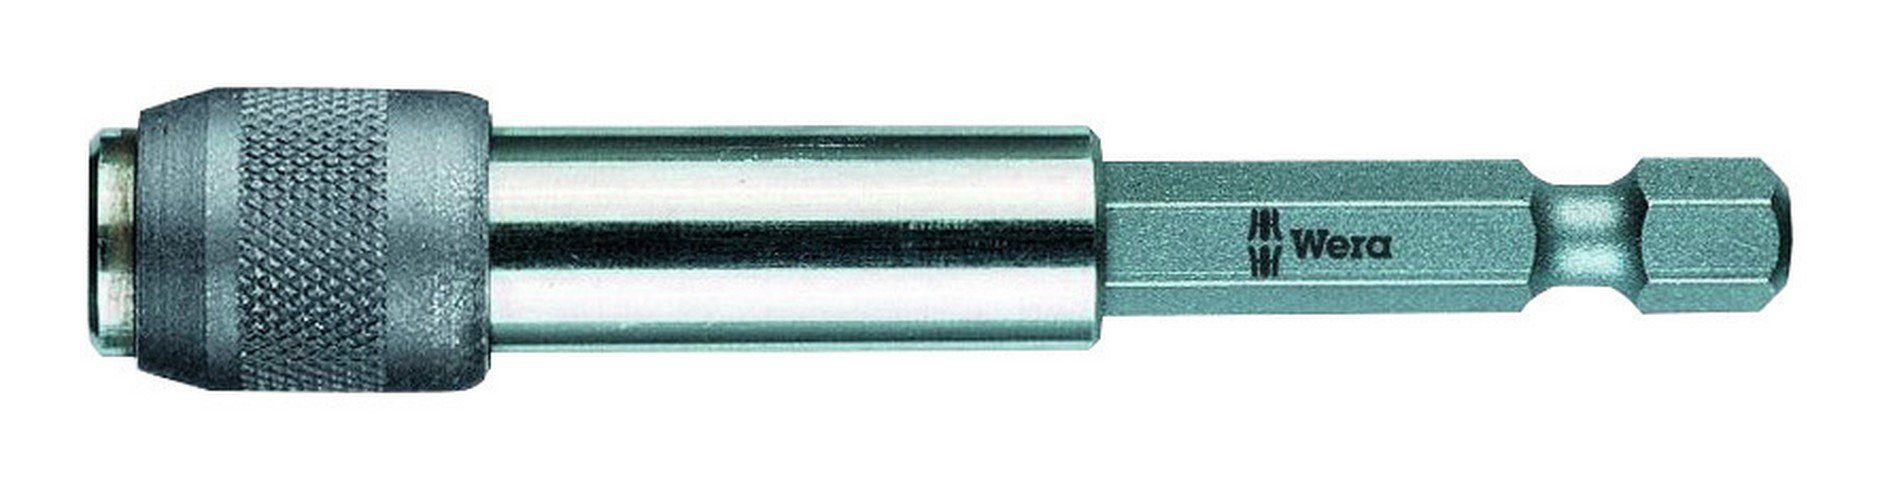 Wera Bithalter, Schnellwechsel 1/4" für 1/4" Bits Magnet 77 mm